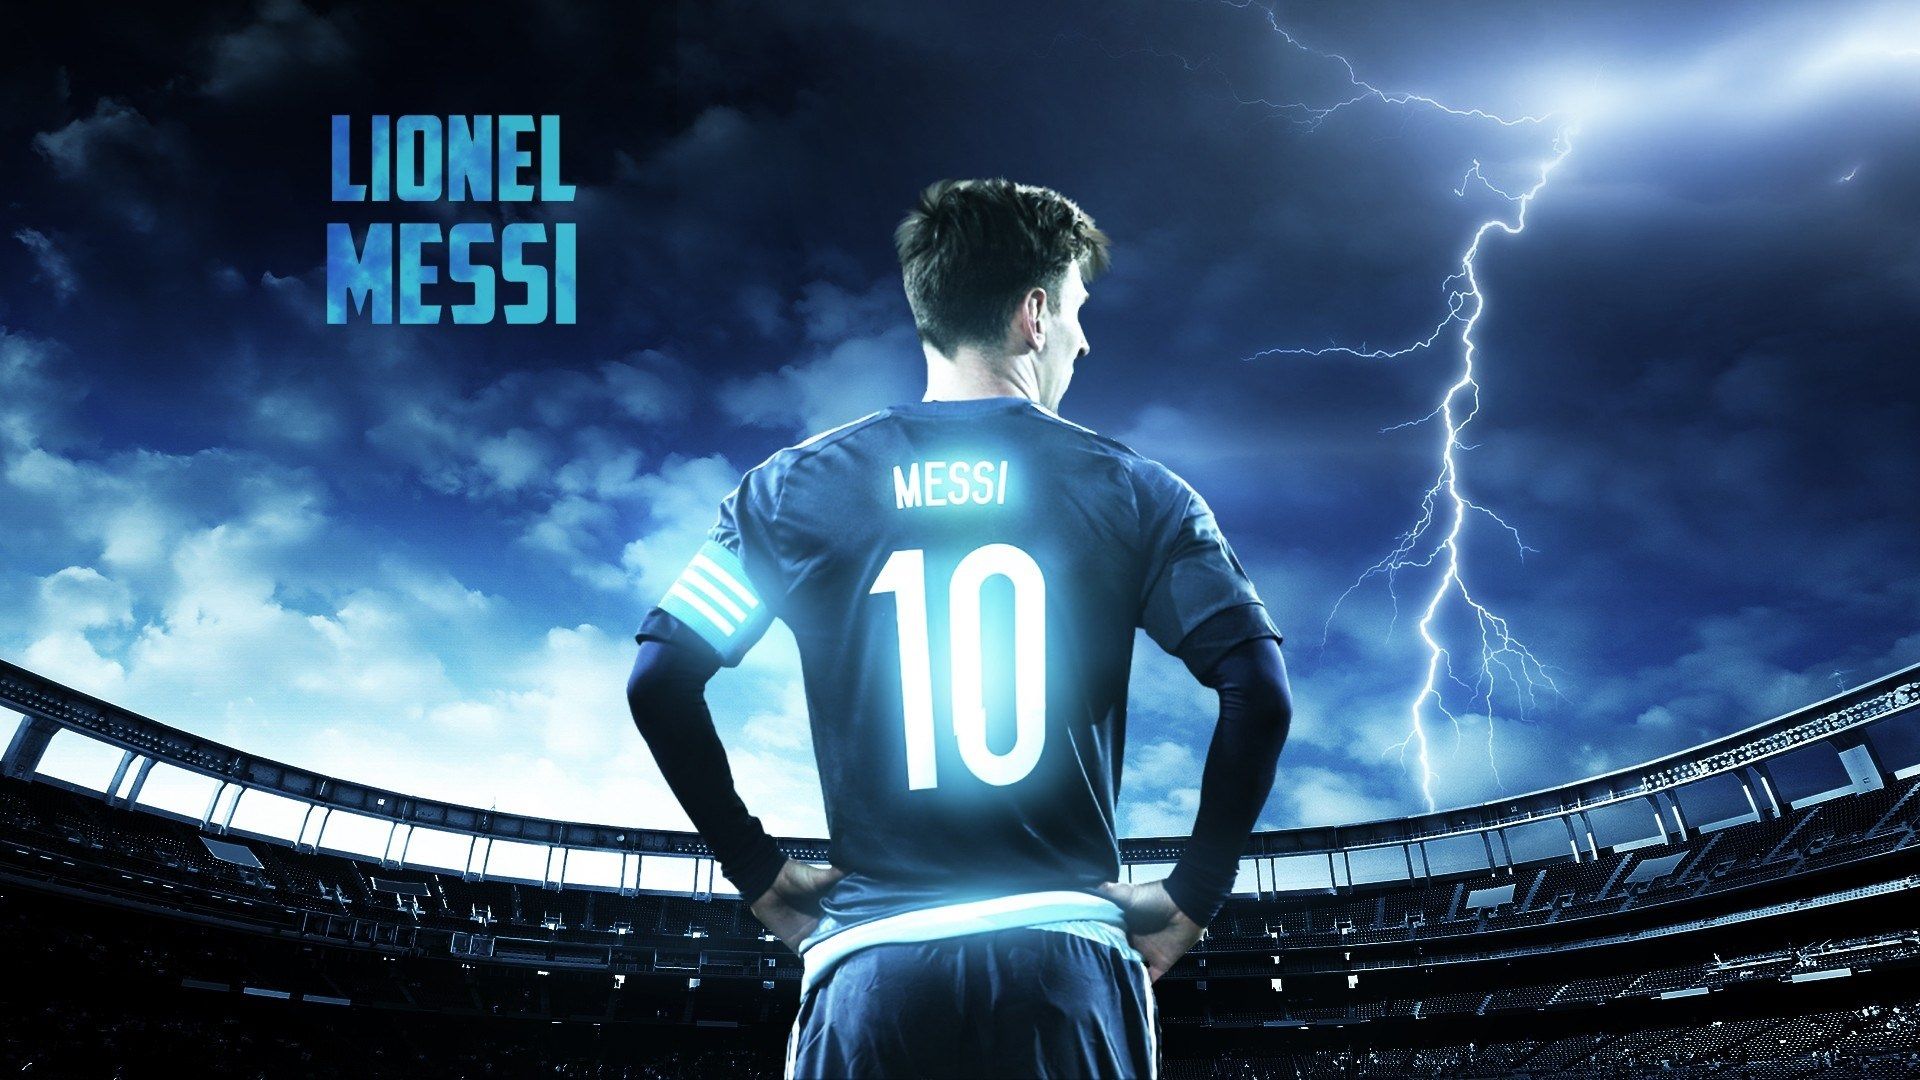 Bạn là một fan hâm mộ của Lionel Messi? Hãy xem hình nền mới của anh ấy, với những hình ảnh ấn tượng và đẹp mắt, sẽ khiến bạn không thể rời mắt. Nó rất đơn giản để có được một bức hình nền Lionel Messi, hãy xem ngay!